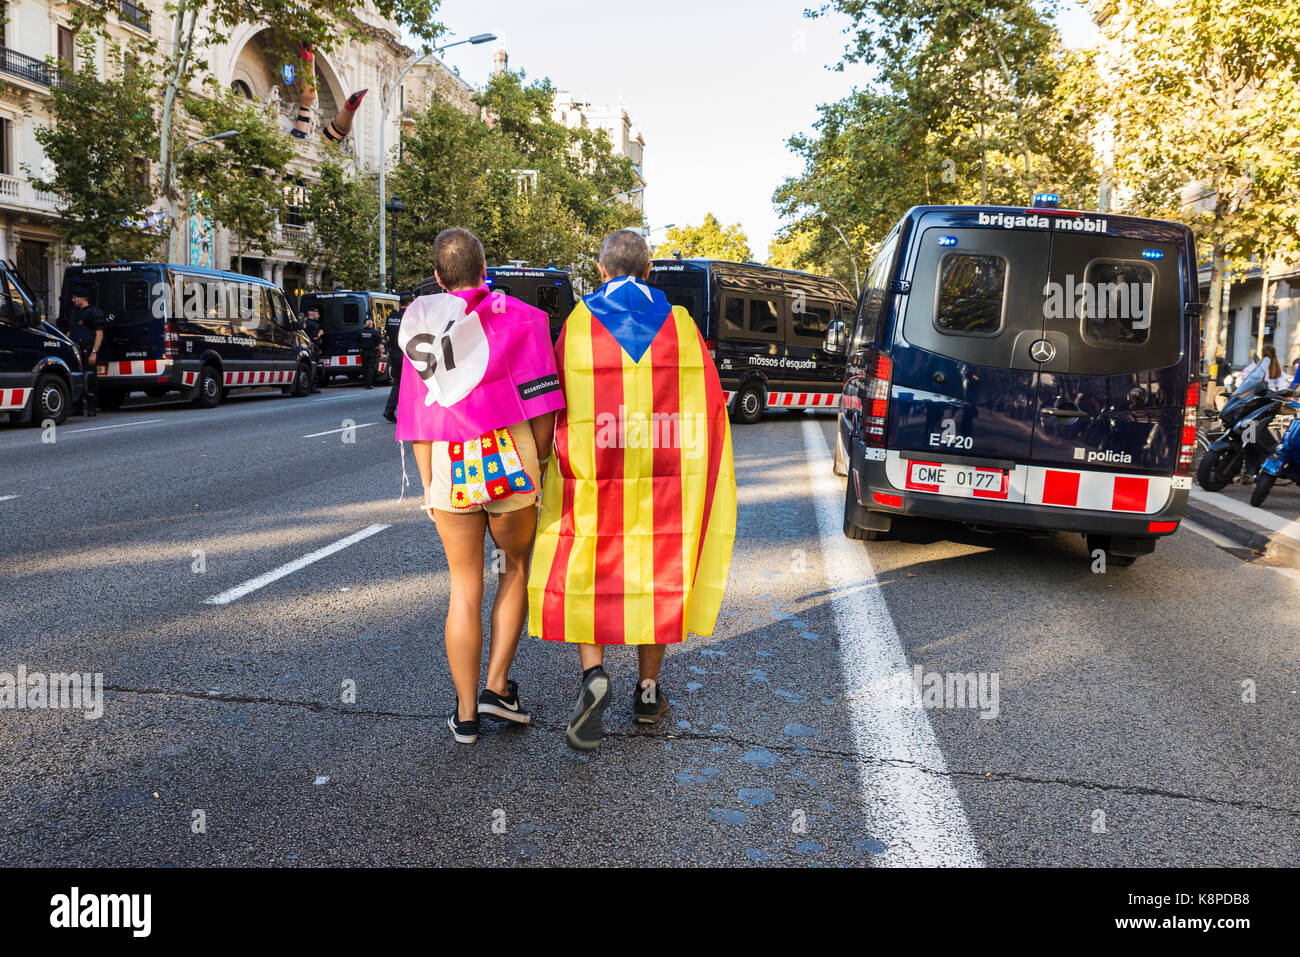 Barcellona, Spagna - 20 settembre 2017: giovane camminando tra auto della polizia verso la dimostrazione di indipendenza della Catalogna credito: Jordi de Rueda roigé/alamy live news Foto Stock